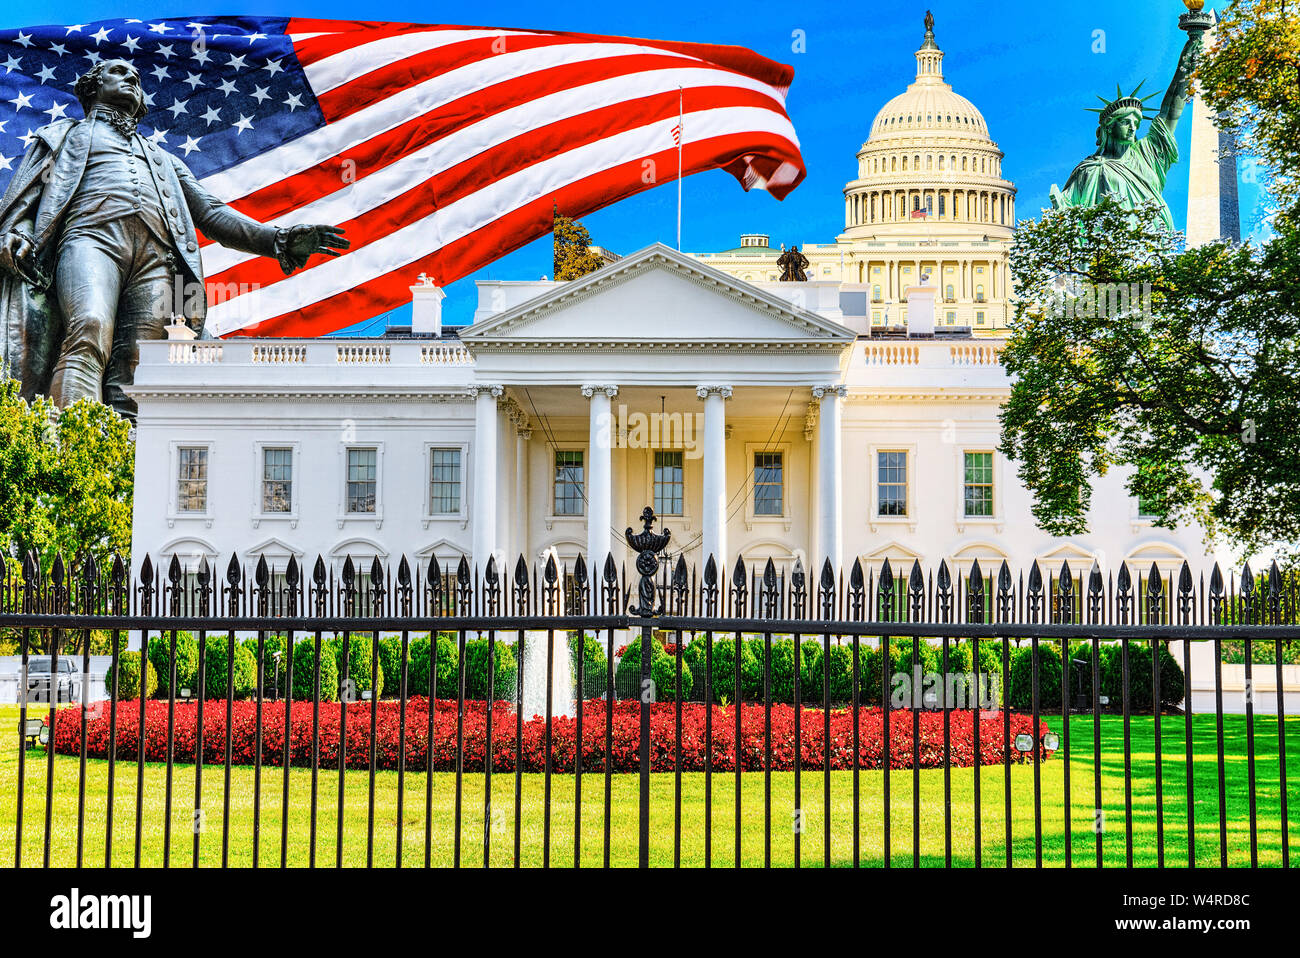 Das Weiße Haus ist auf der Nordseite und der Rasen vor der Шт Washington, DC. Washington ist die Hauptstadt der Vereinigten Staaten. Stockfoto